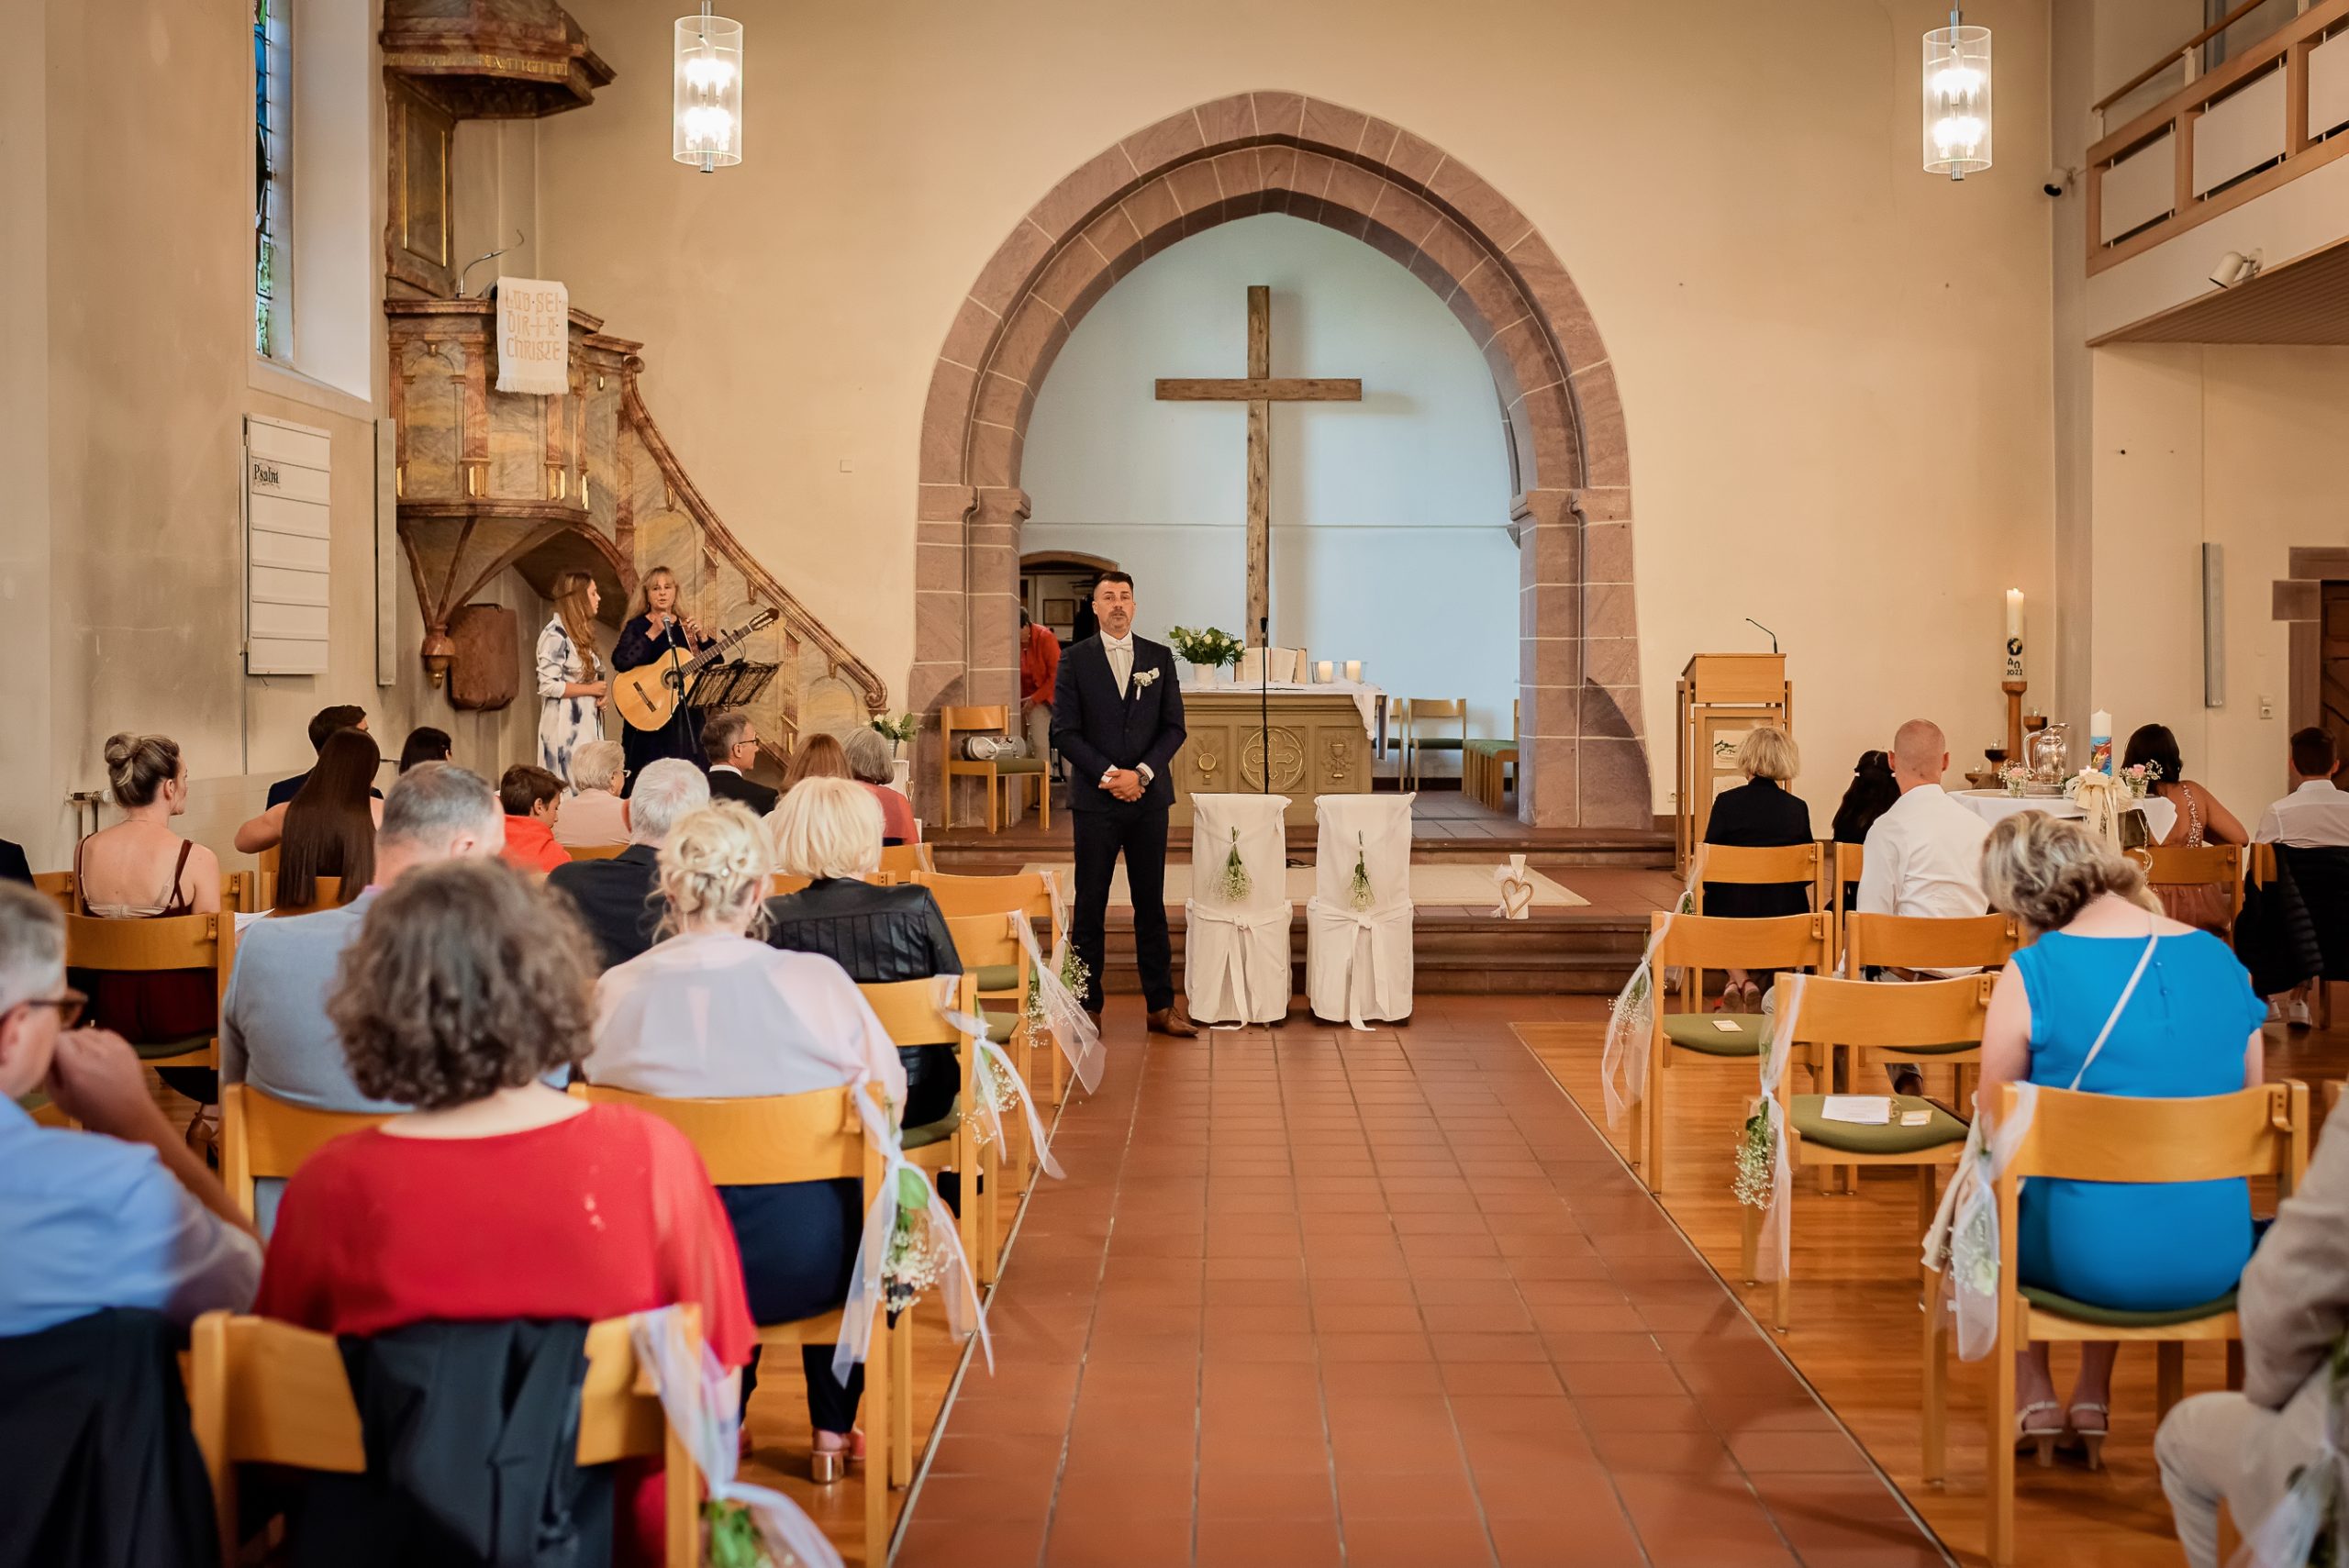 Ein Foto, das den Bräutigam während einer kirchlichen Hochzeit in der Evangelischen Kirche in Friesenheim zeigt. Der Bräutigam wartet am Altar auf seine Braut, während die Gäste bereits ihre Plätze eingenommen haben.